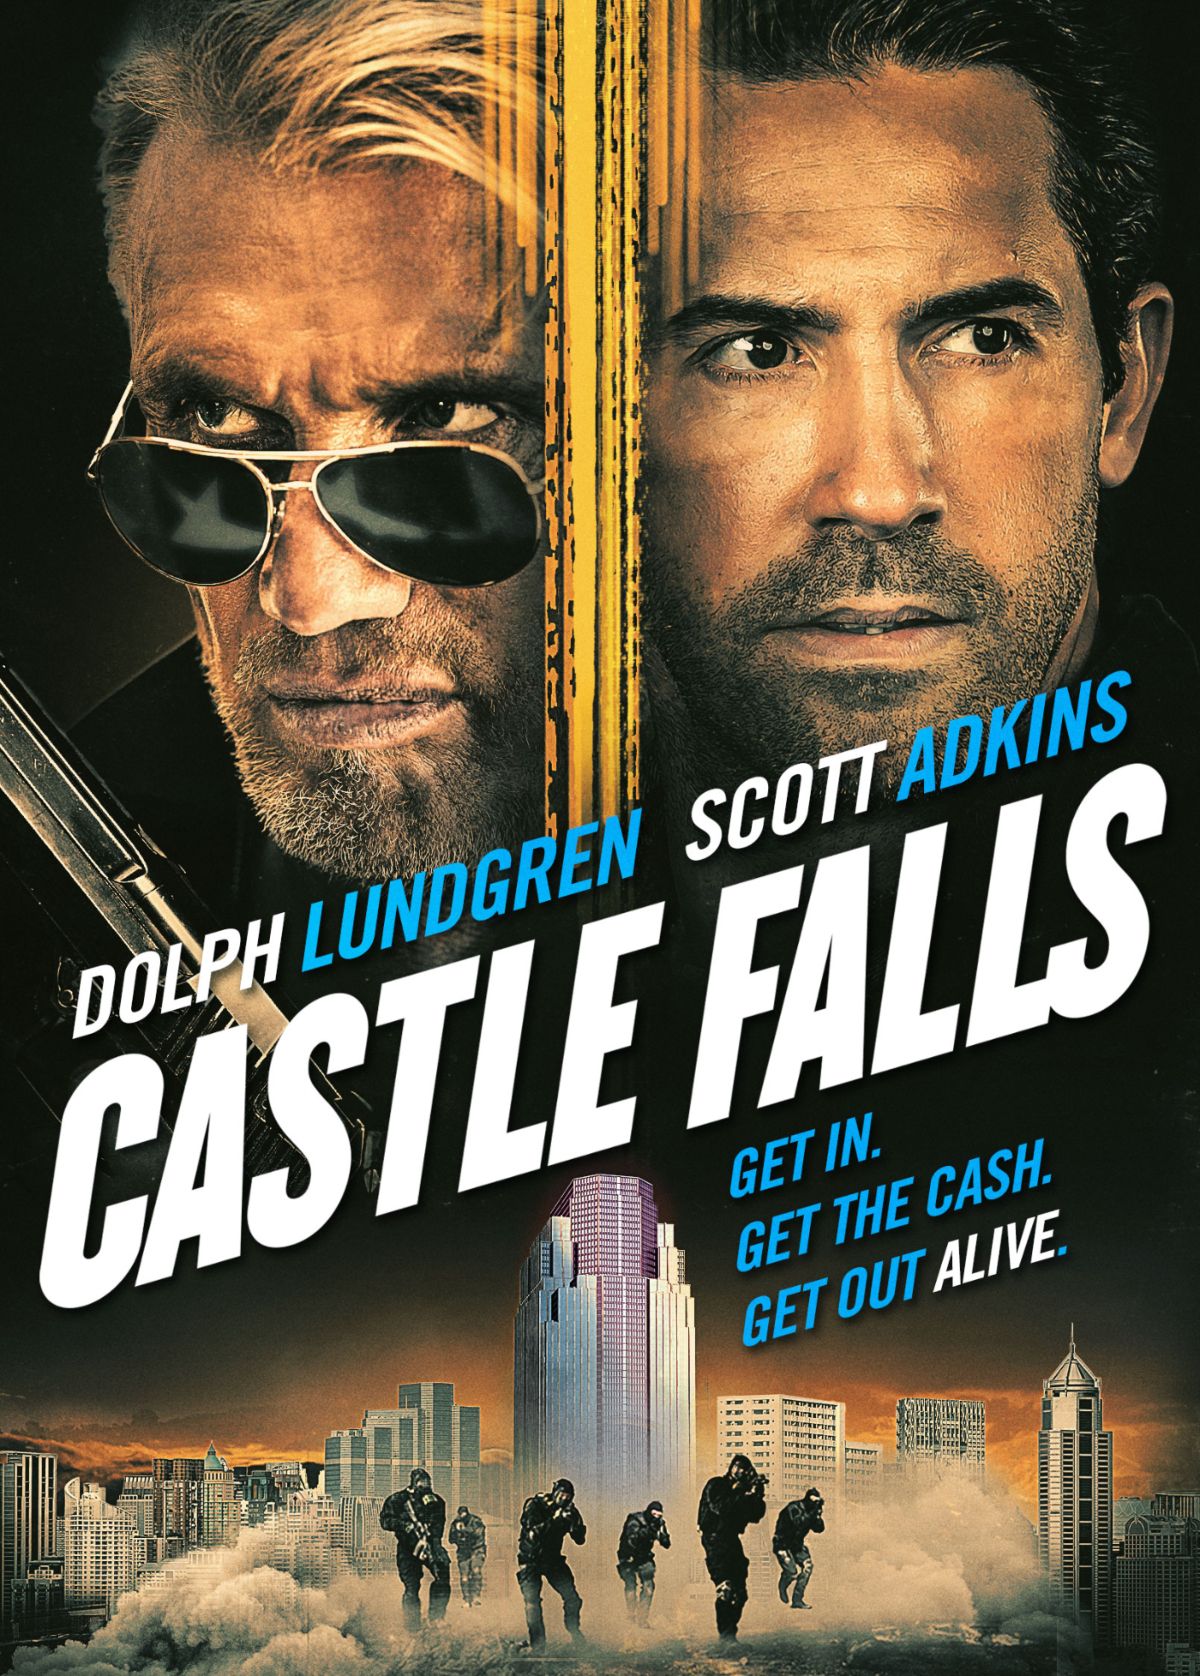 castle-falls-poster-names